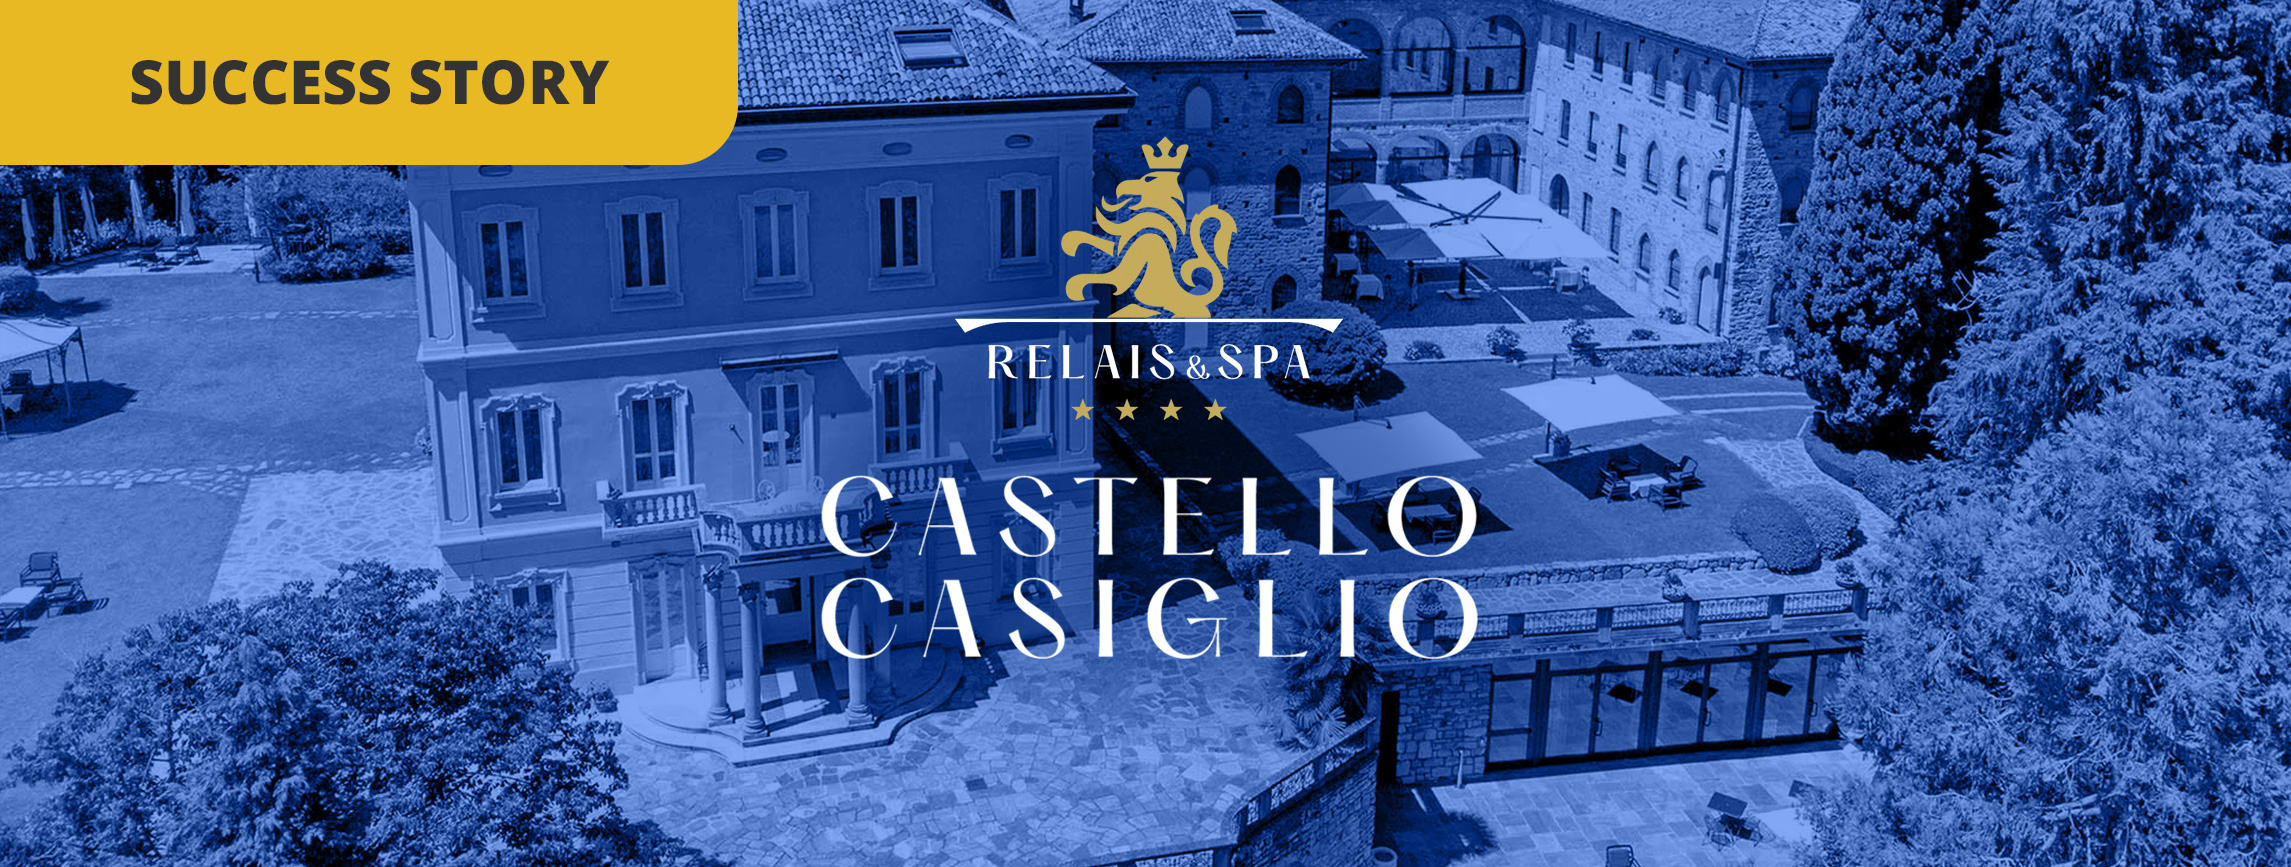 Comment le Relais Castello di Casiglio a atteint le rang n°1...